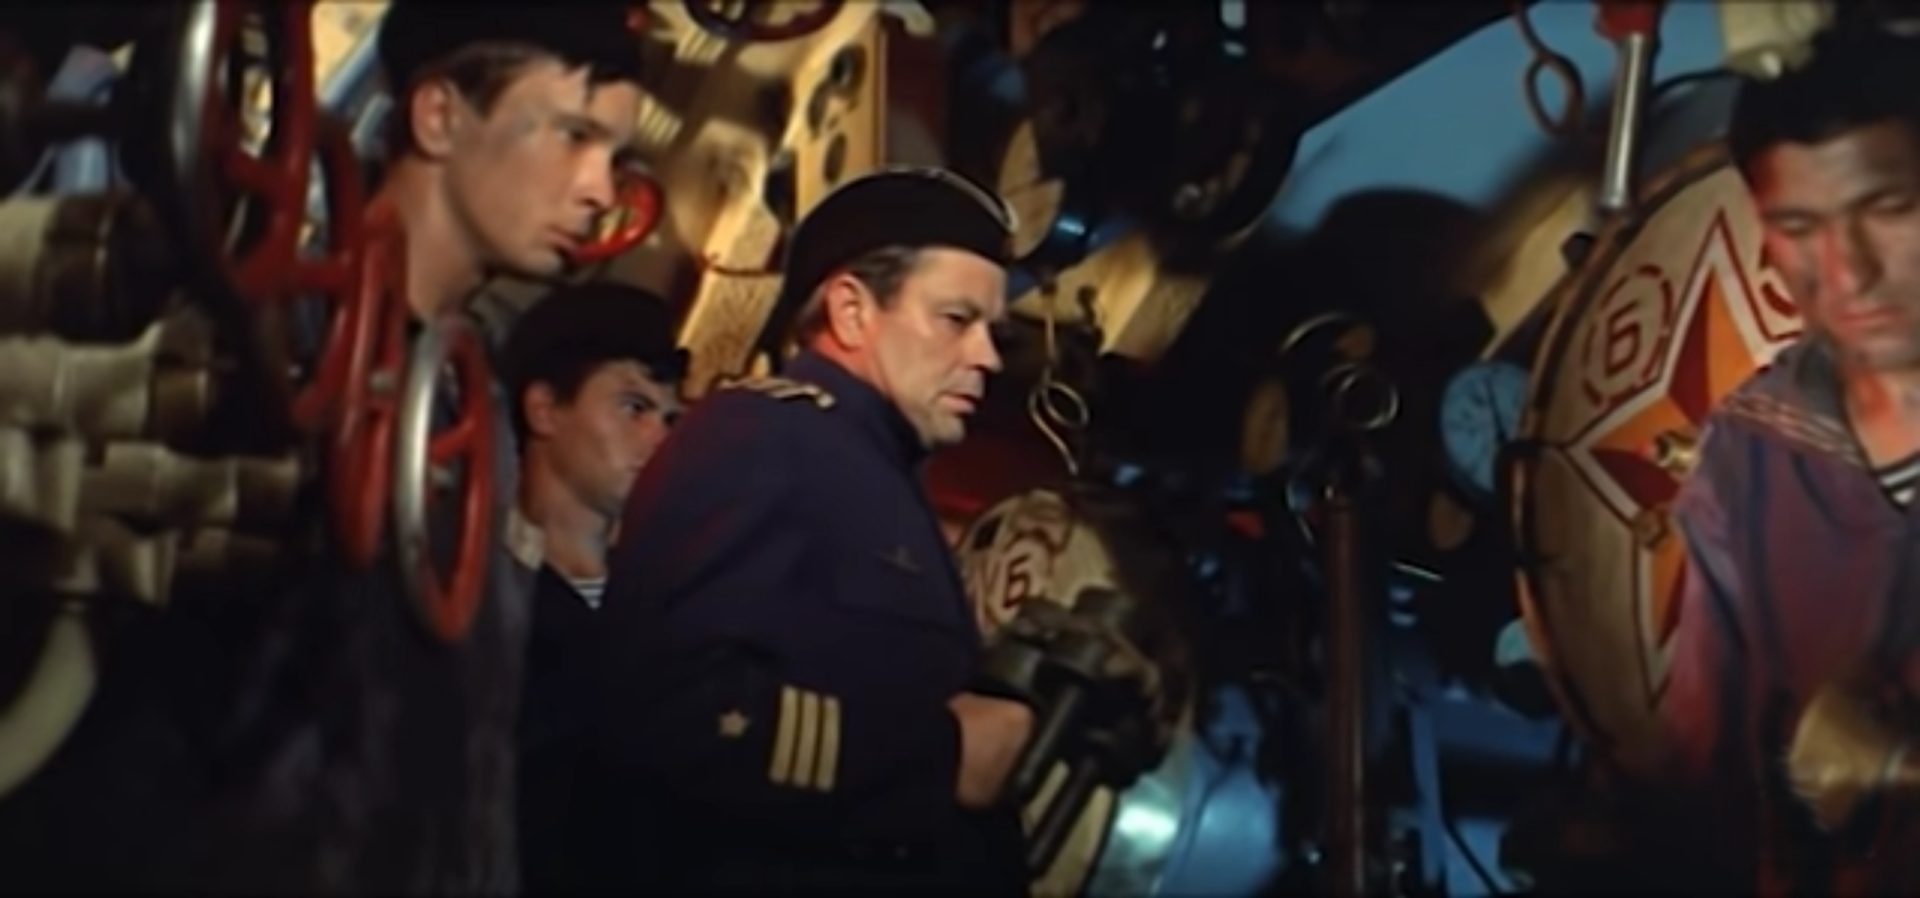 Sowjetische U-Boot-Fahrer im Torpedoraum in angespannter Atmosphäre, aus leichter Froschperspektive gefilmt.